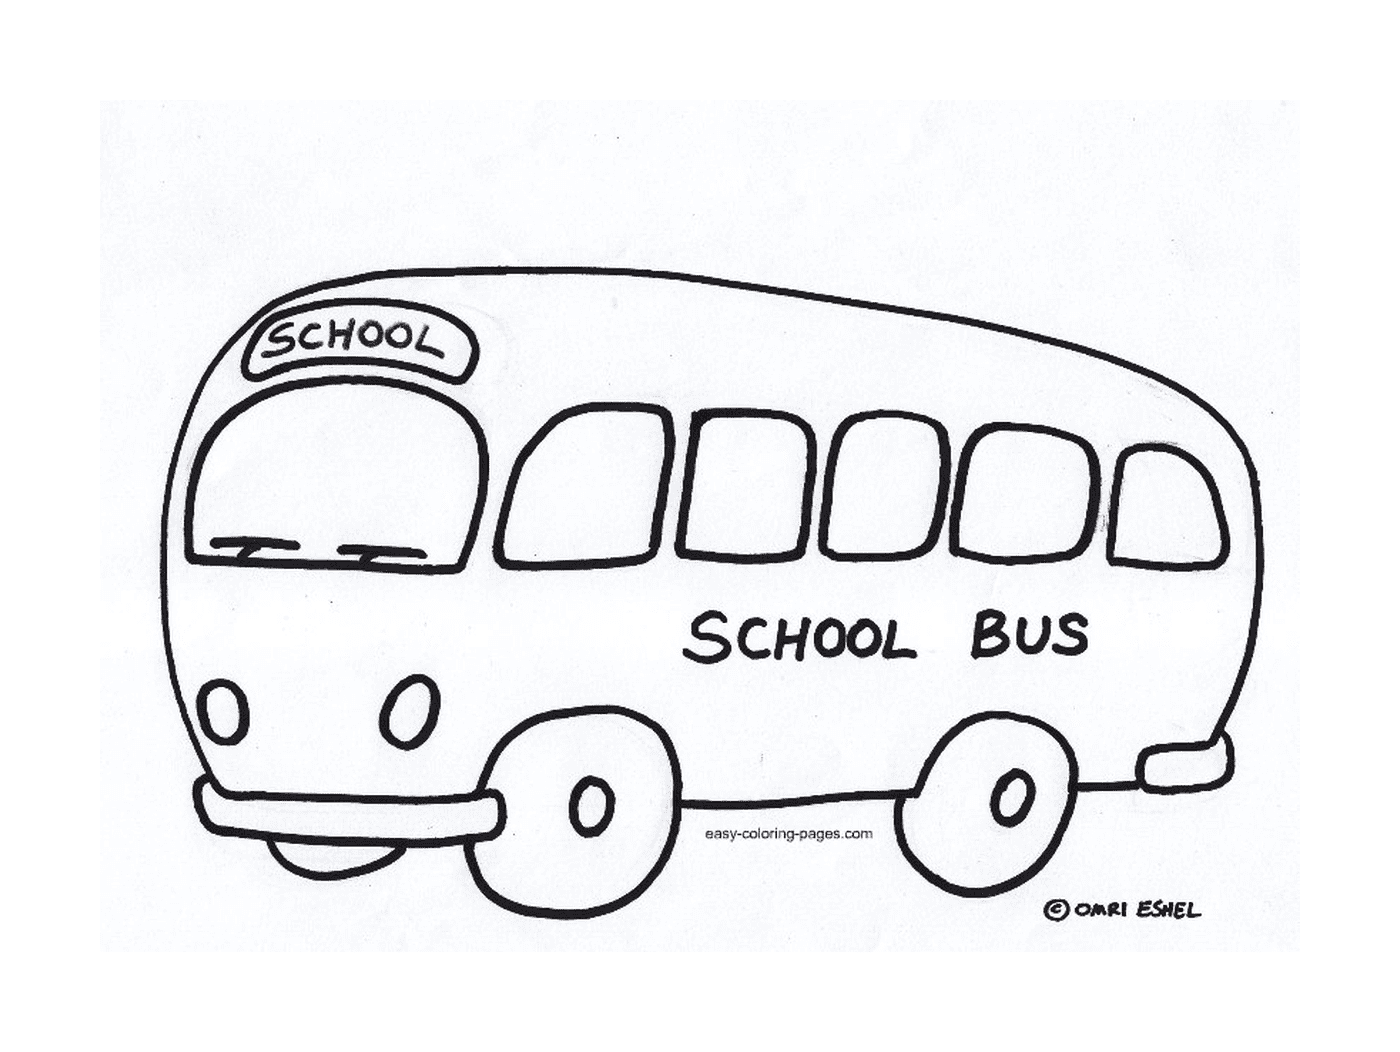  Ein Schulbus bewegt sich 